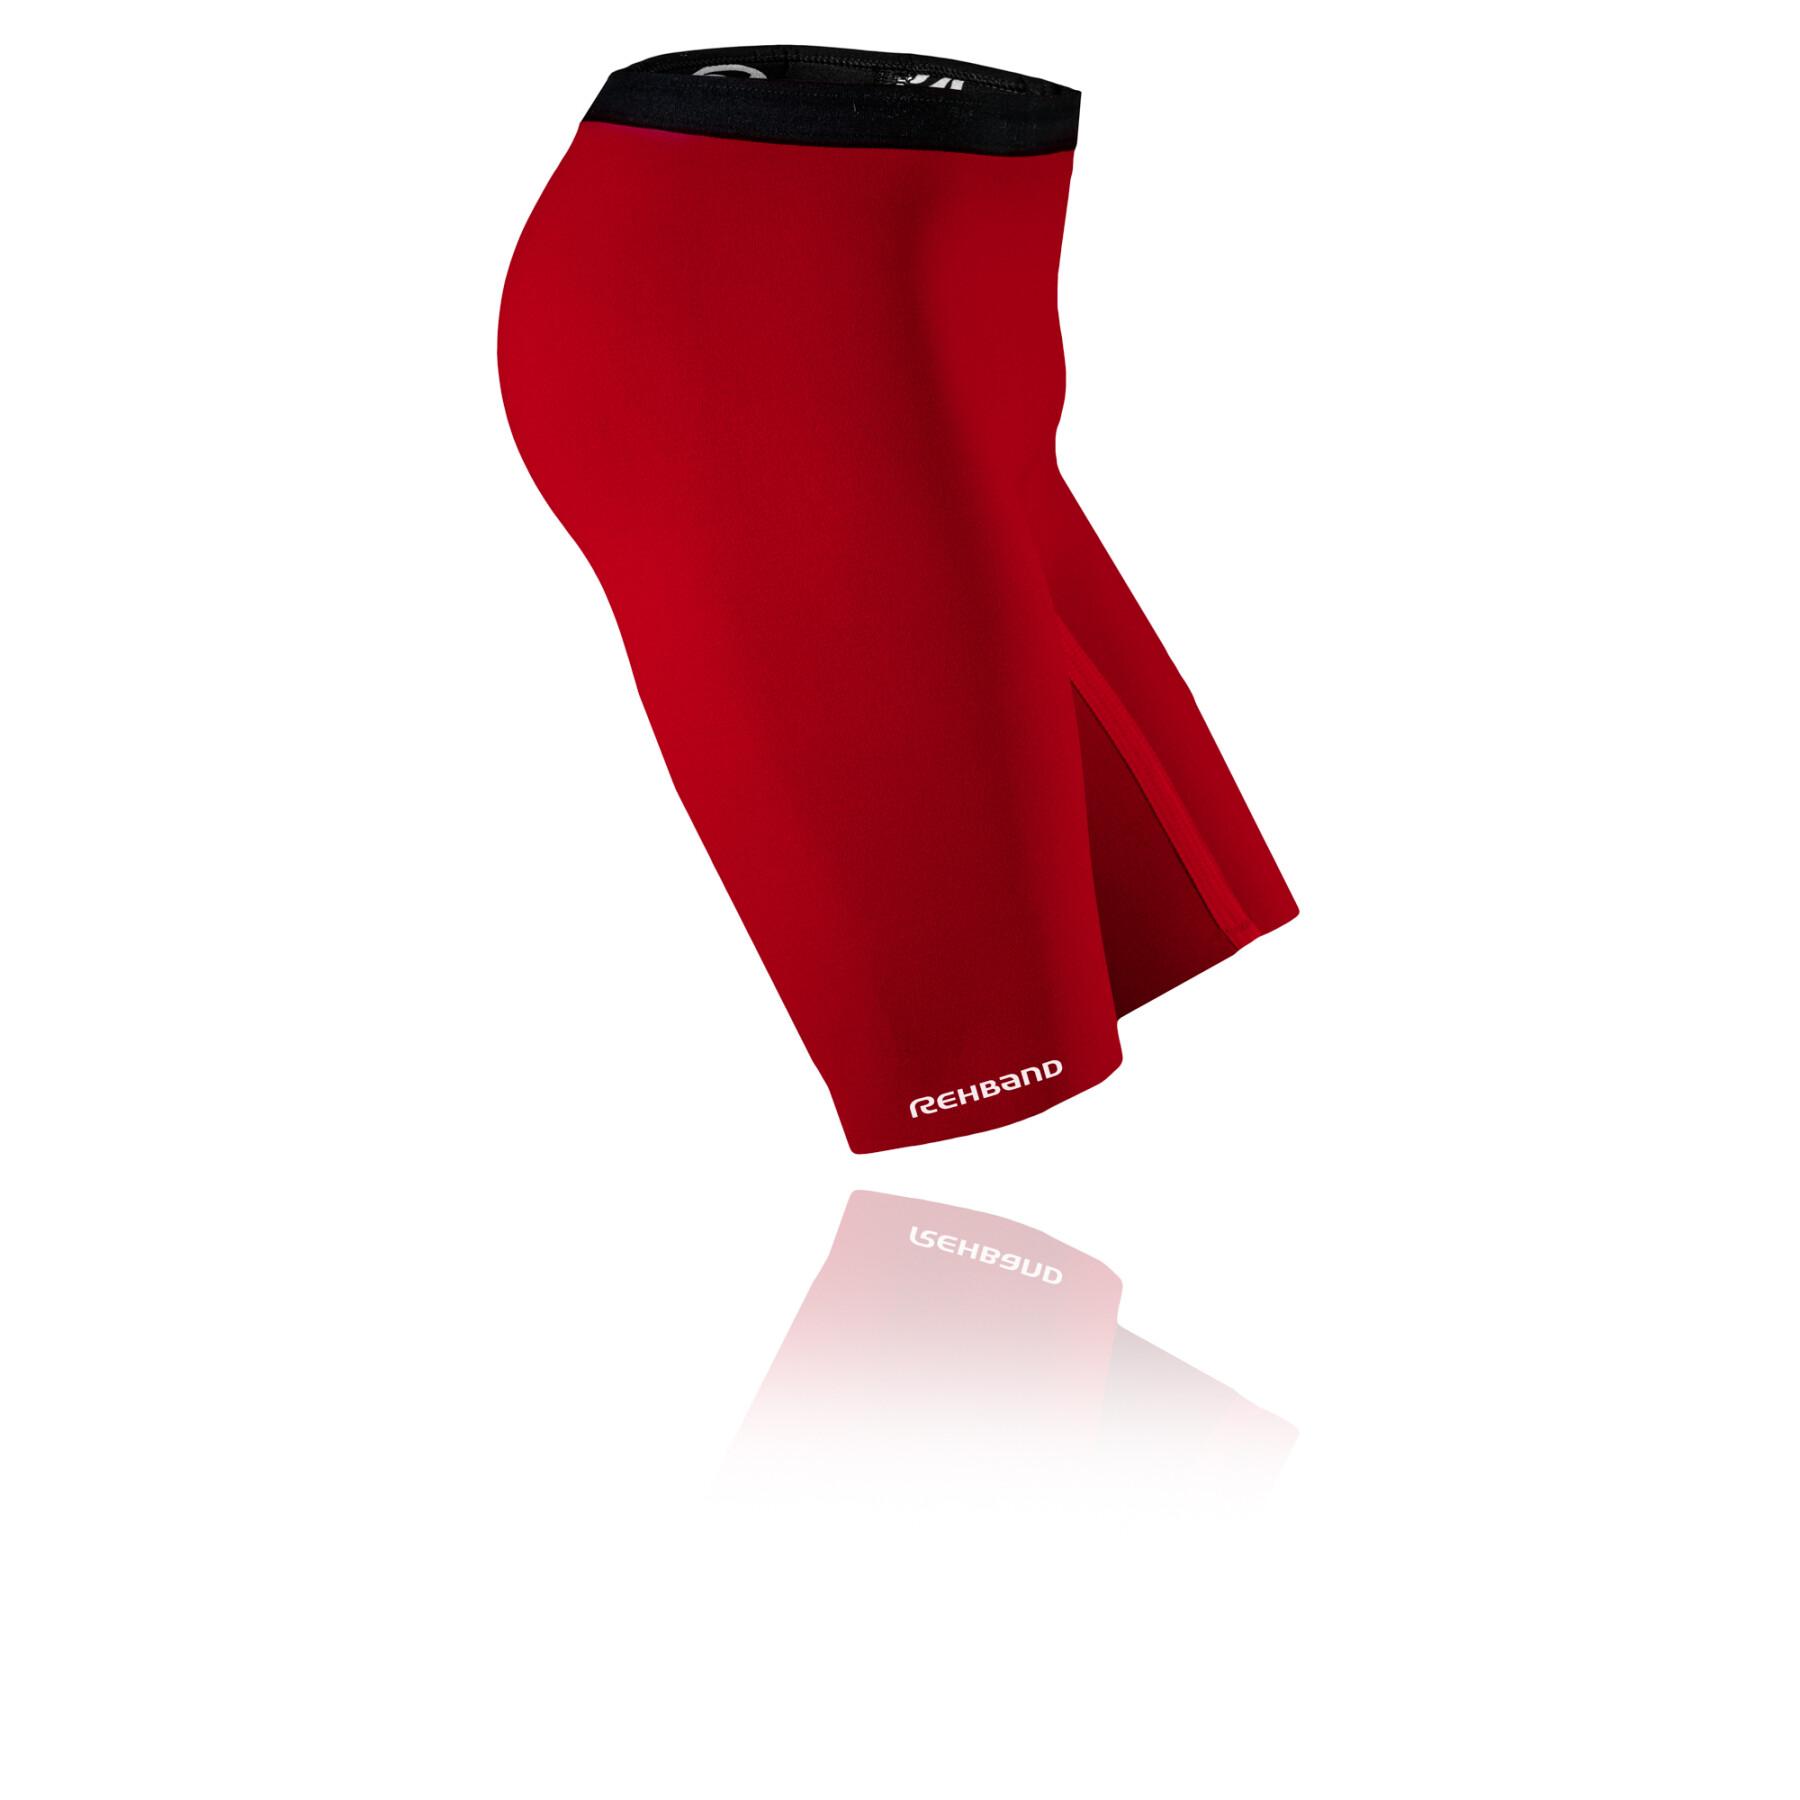 Pantalones cortos térmicos Rehband Qd line